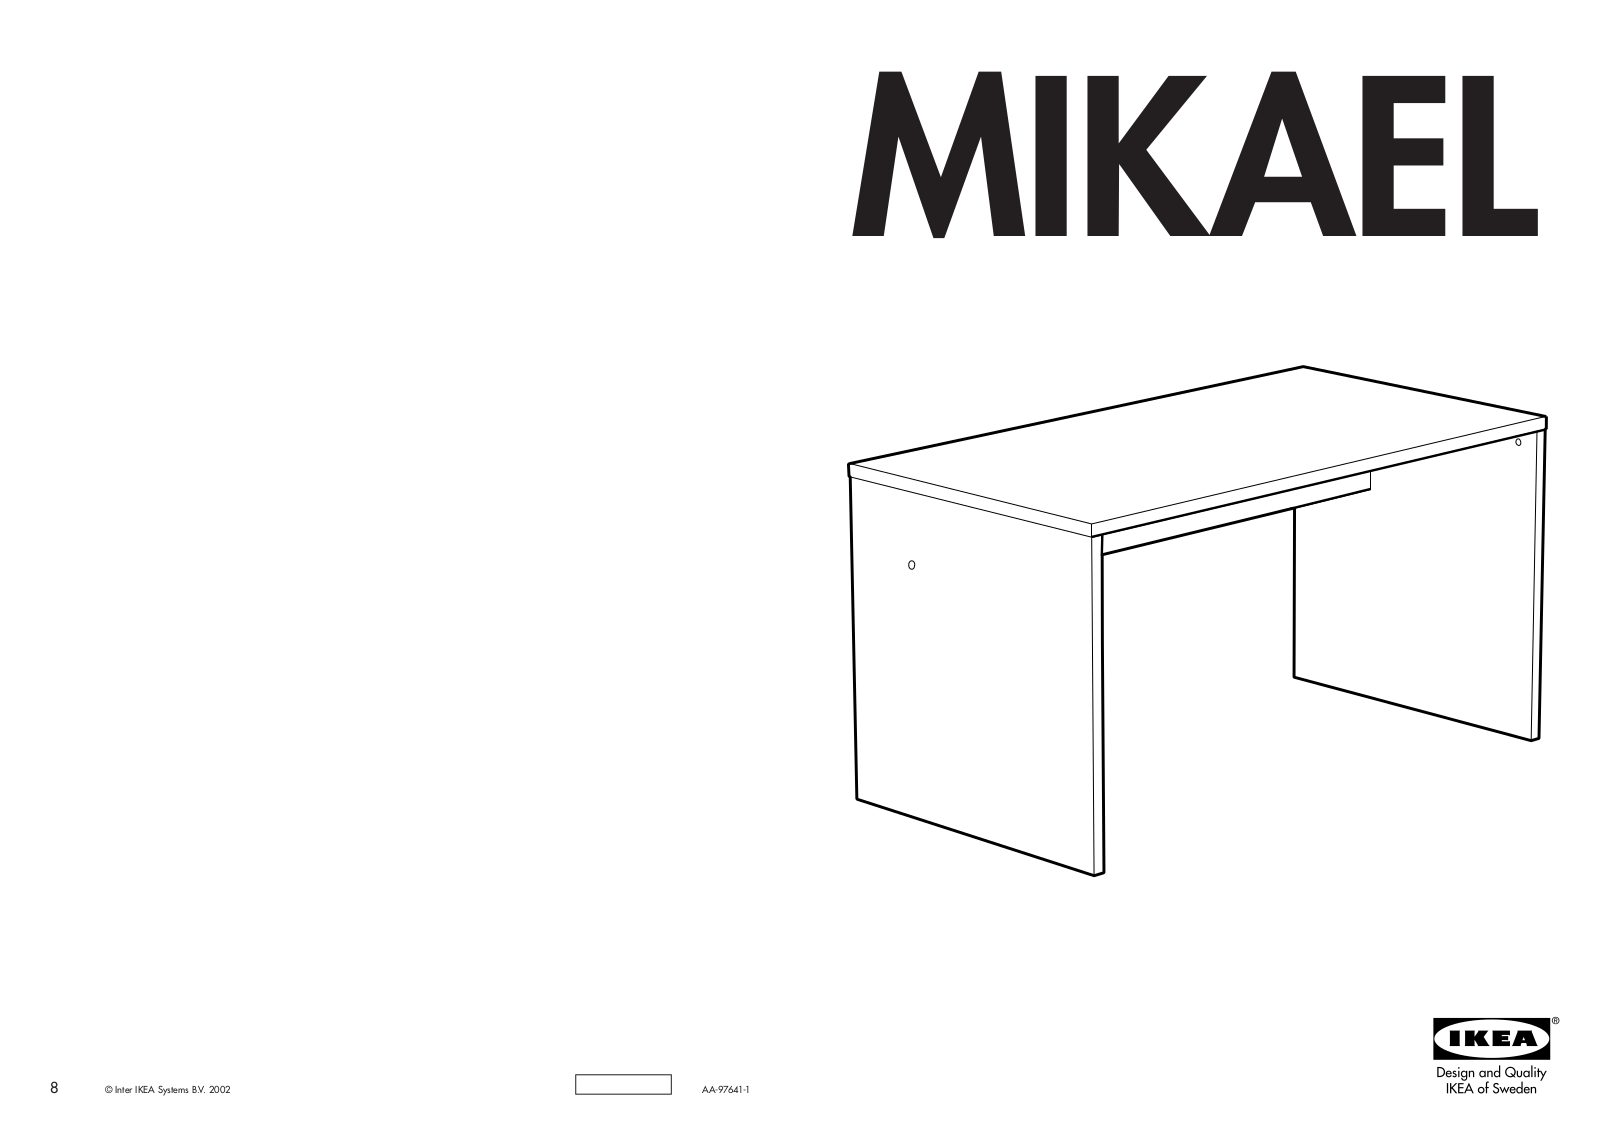 IKEA MIKAEL User Manual